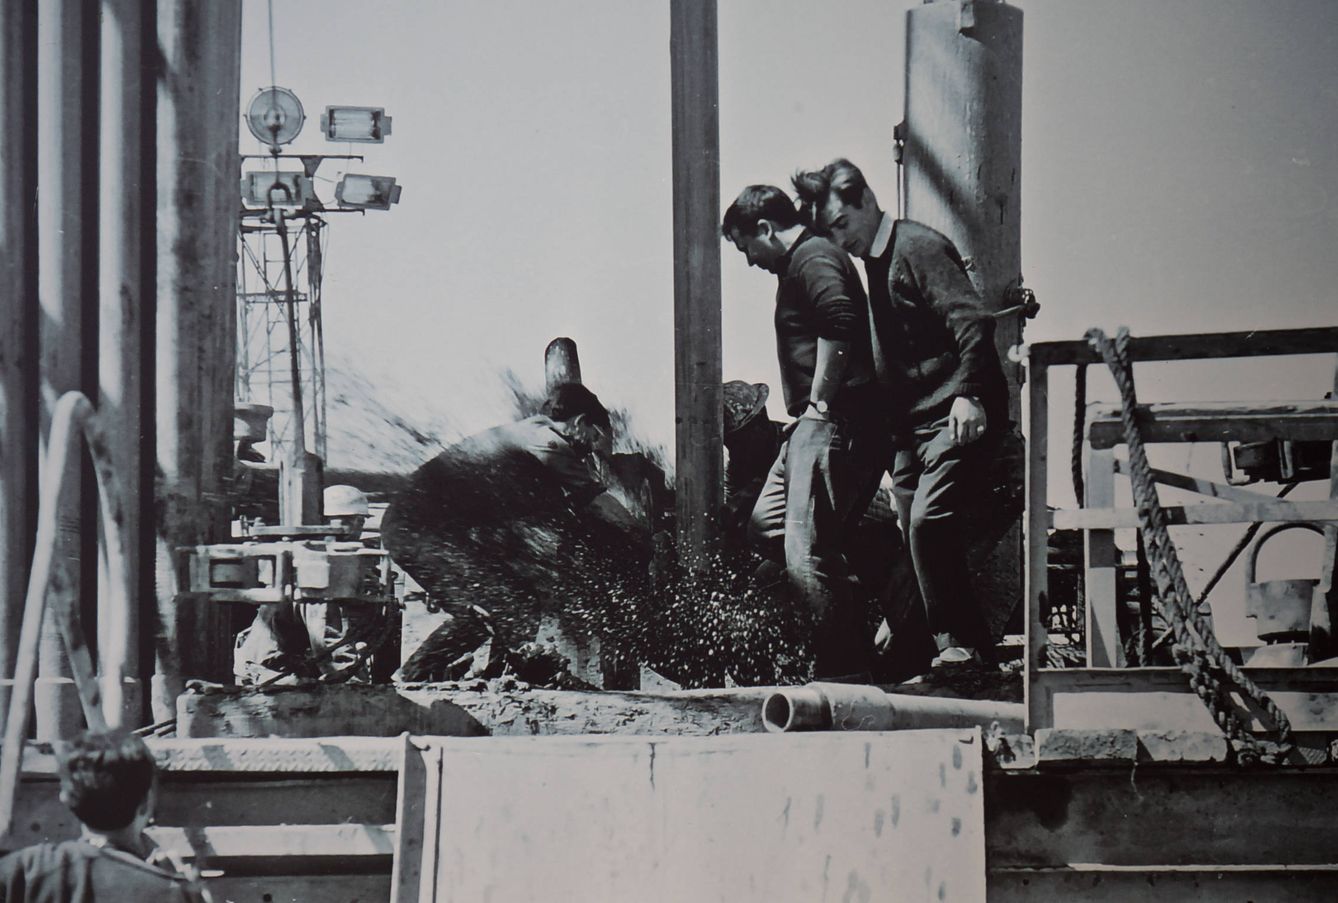 Petróleo saliendo a borbotones de un pozo en los años 60.